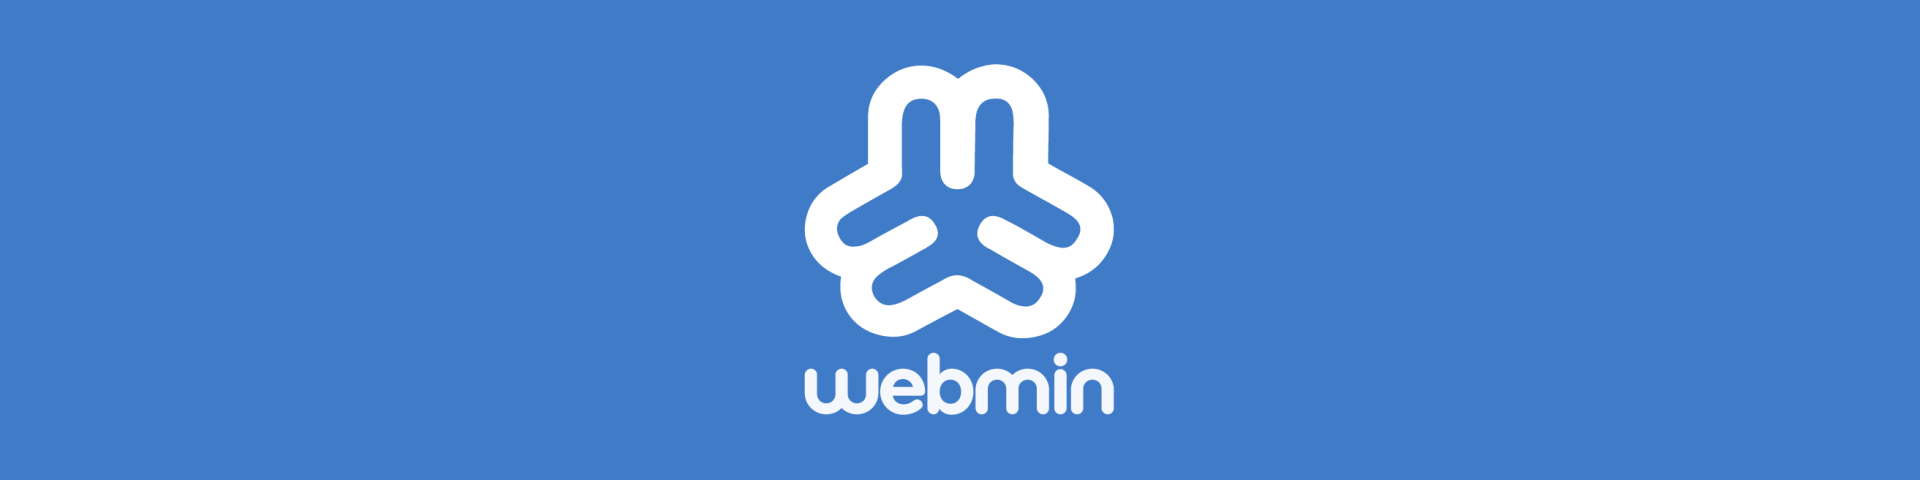 Webmin: Administrando un servidor desde el navegador